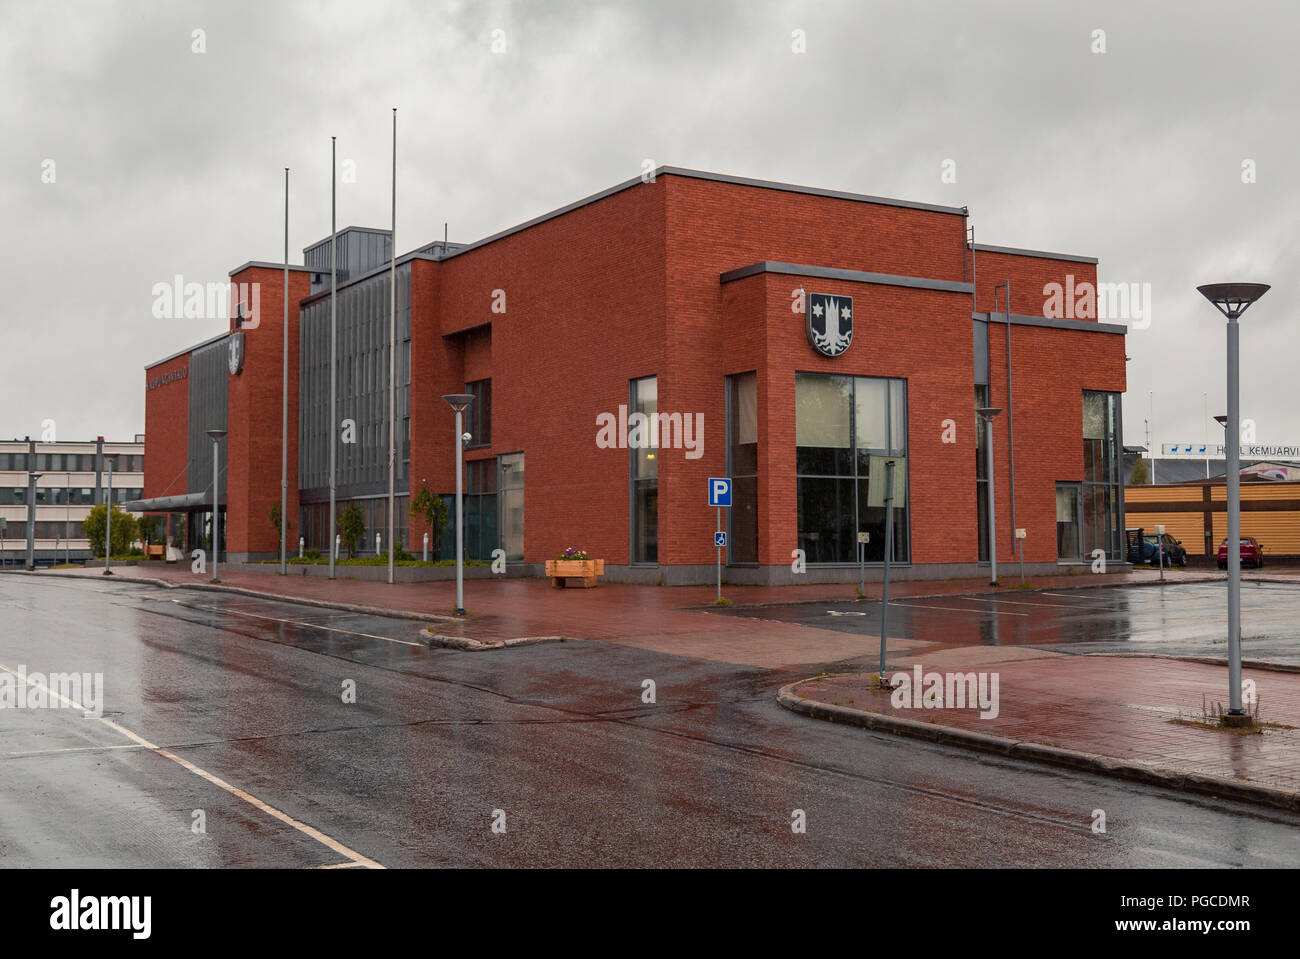 Editorial Kemijärvi Finland, city headquarters in the city on a rainy day Stock Photo